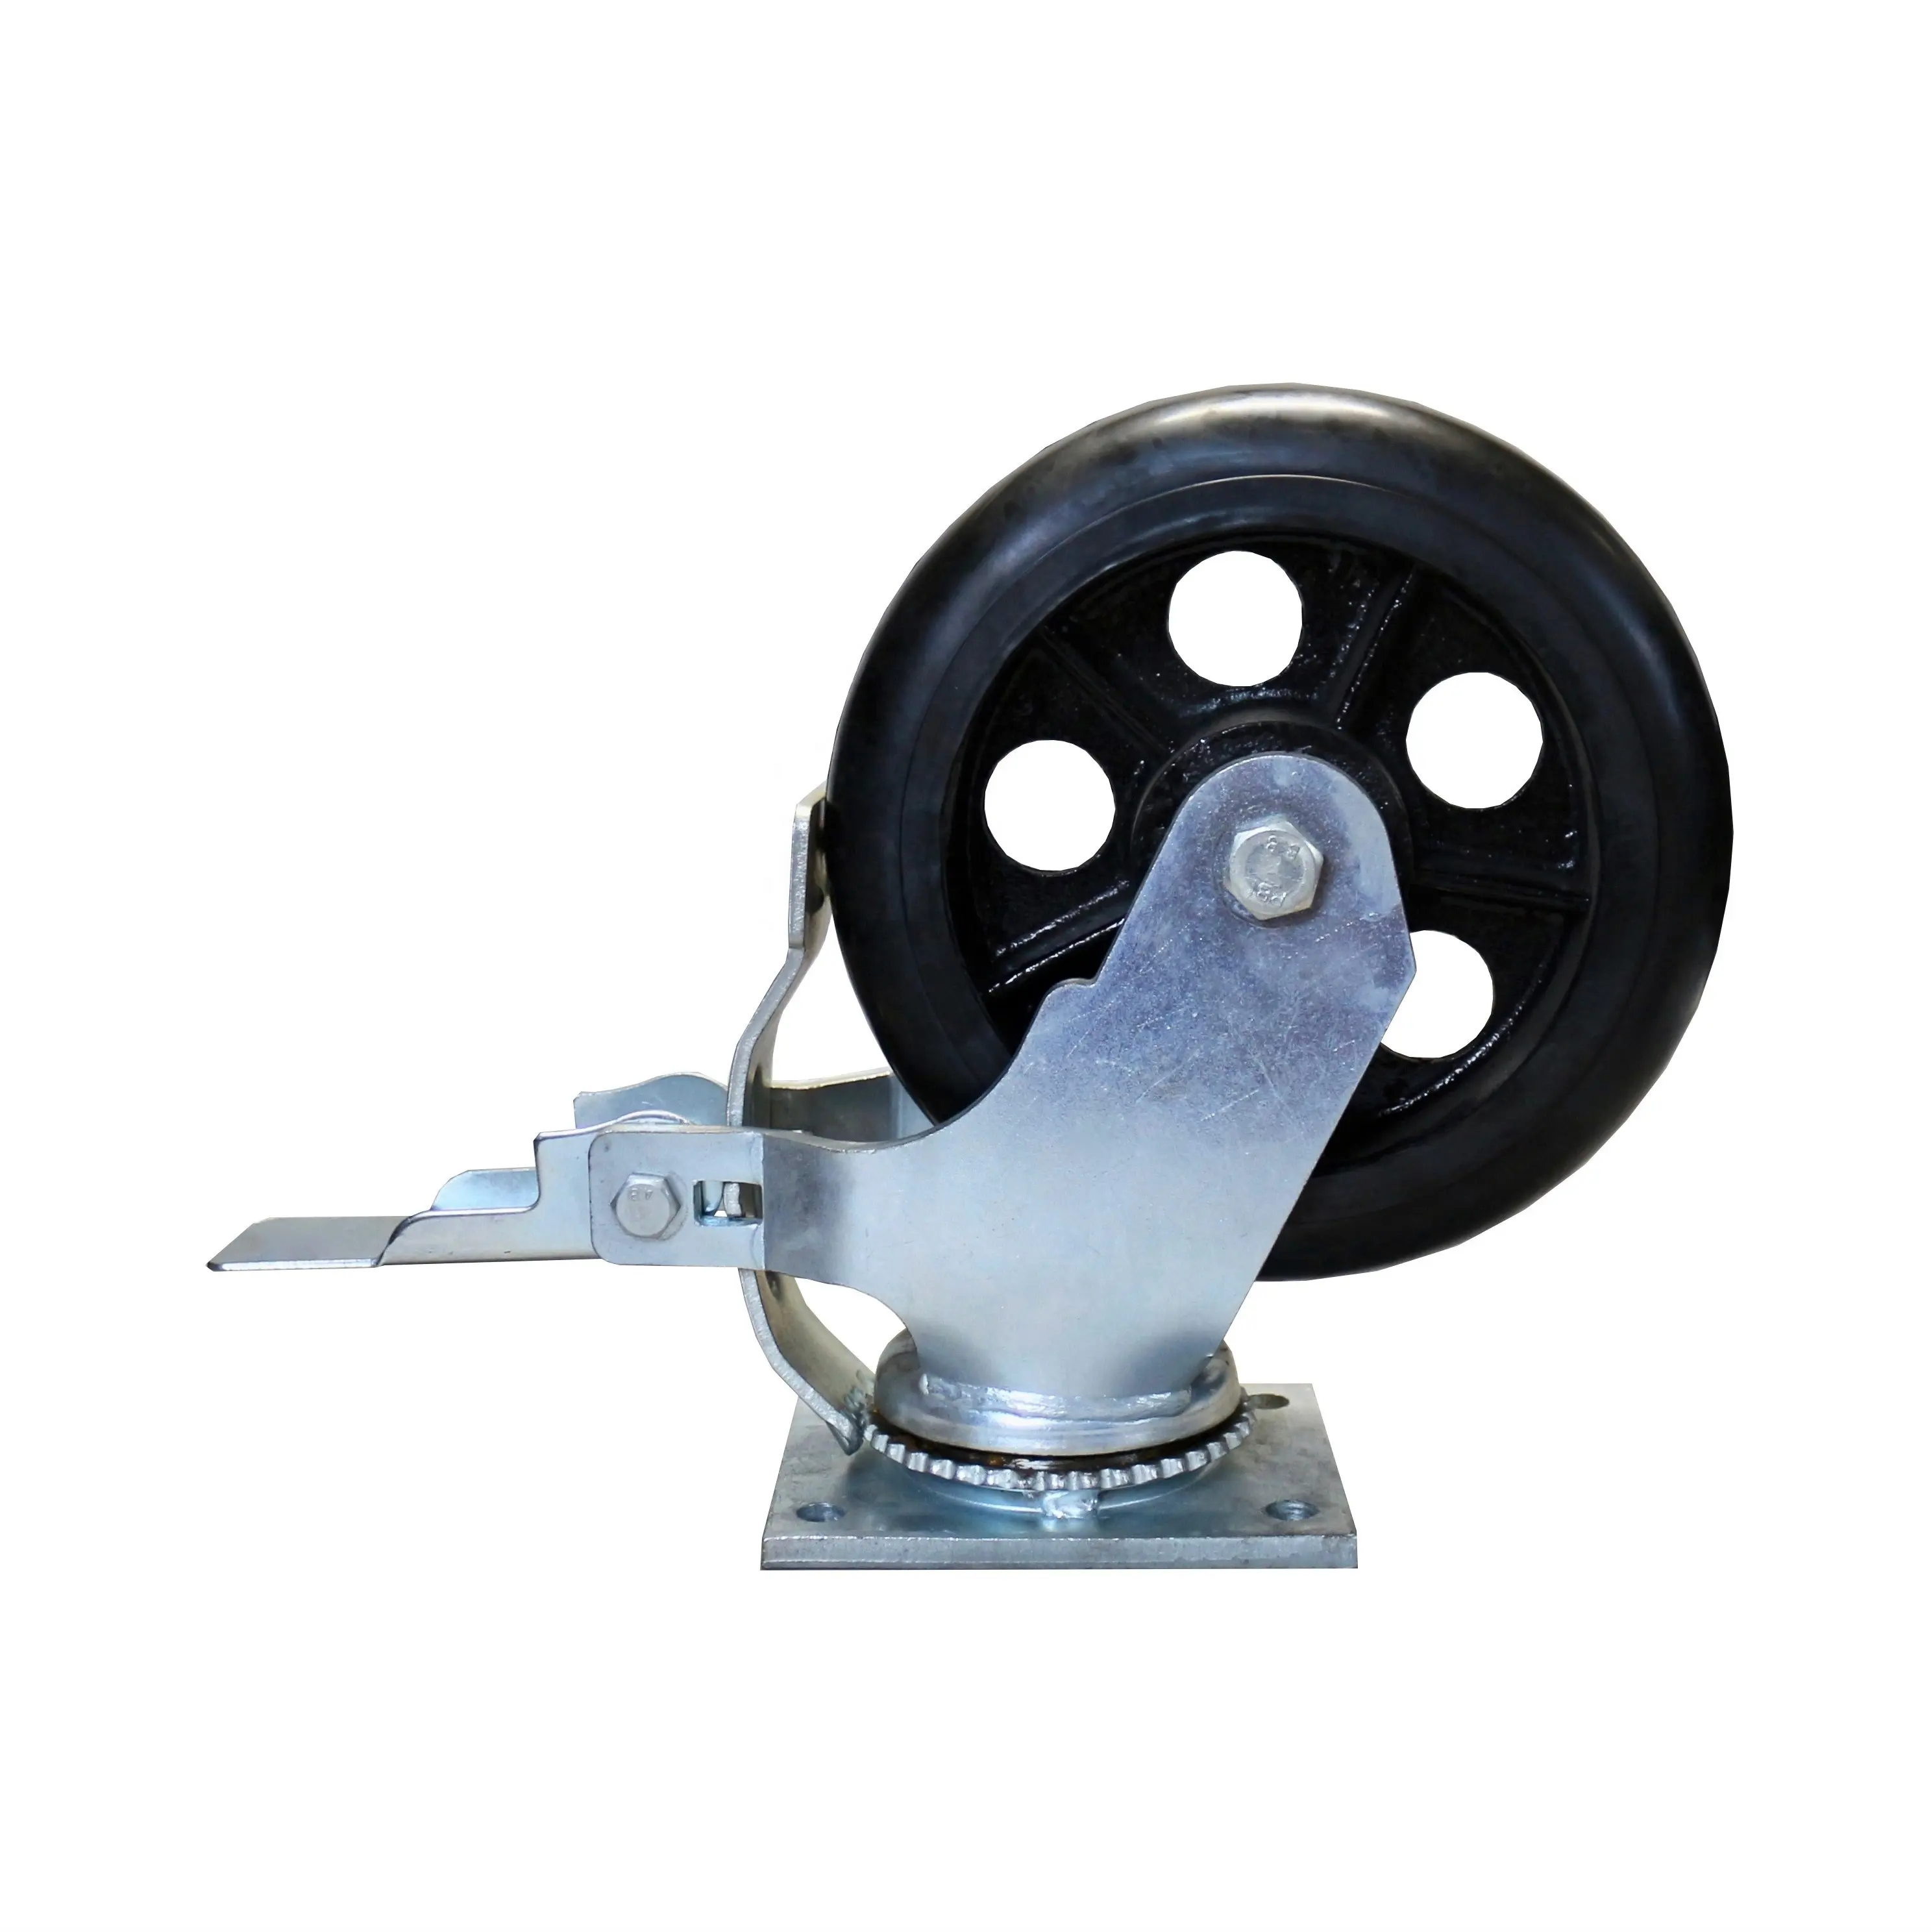 S-S Rubber Plate Scaffolding Caster Swivel Wheel 2 ton 10 inch